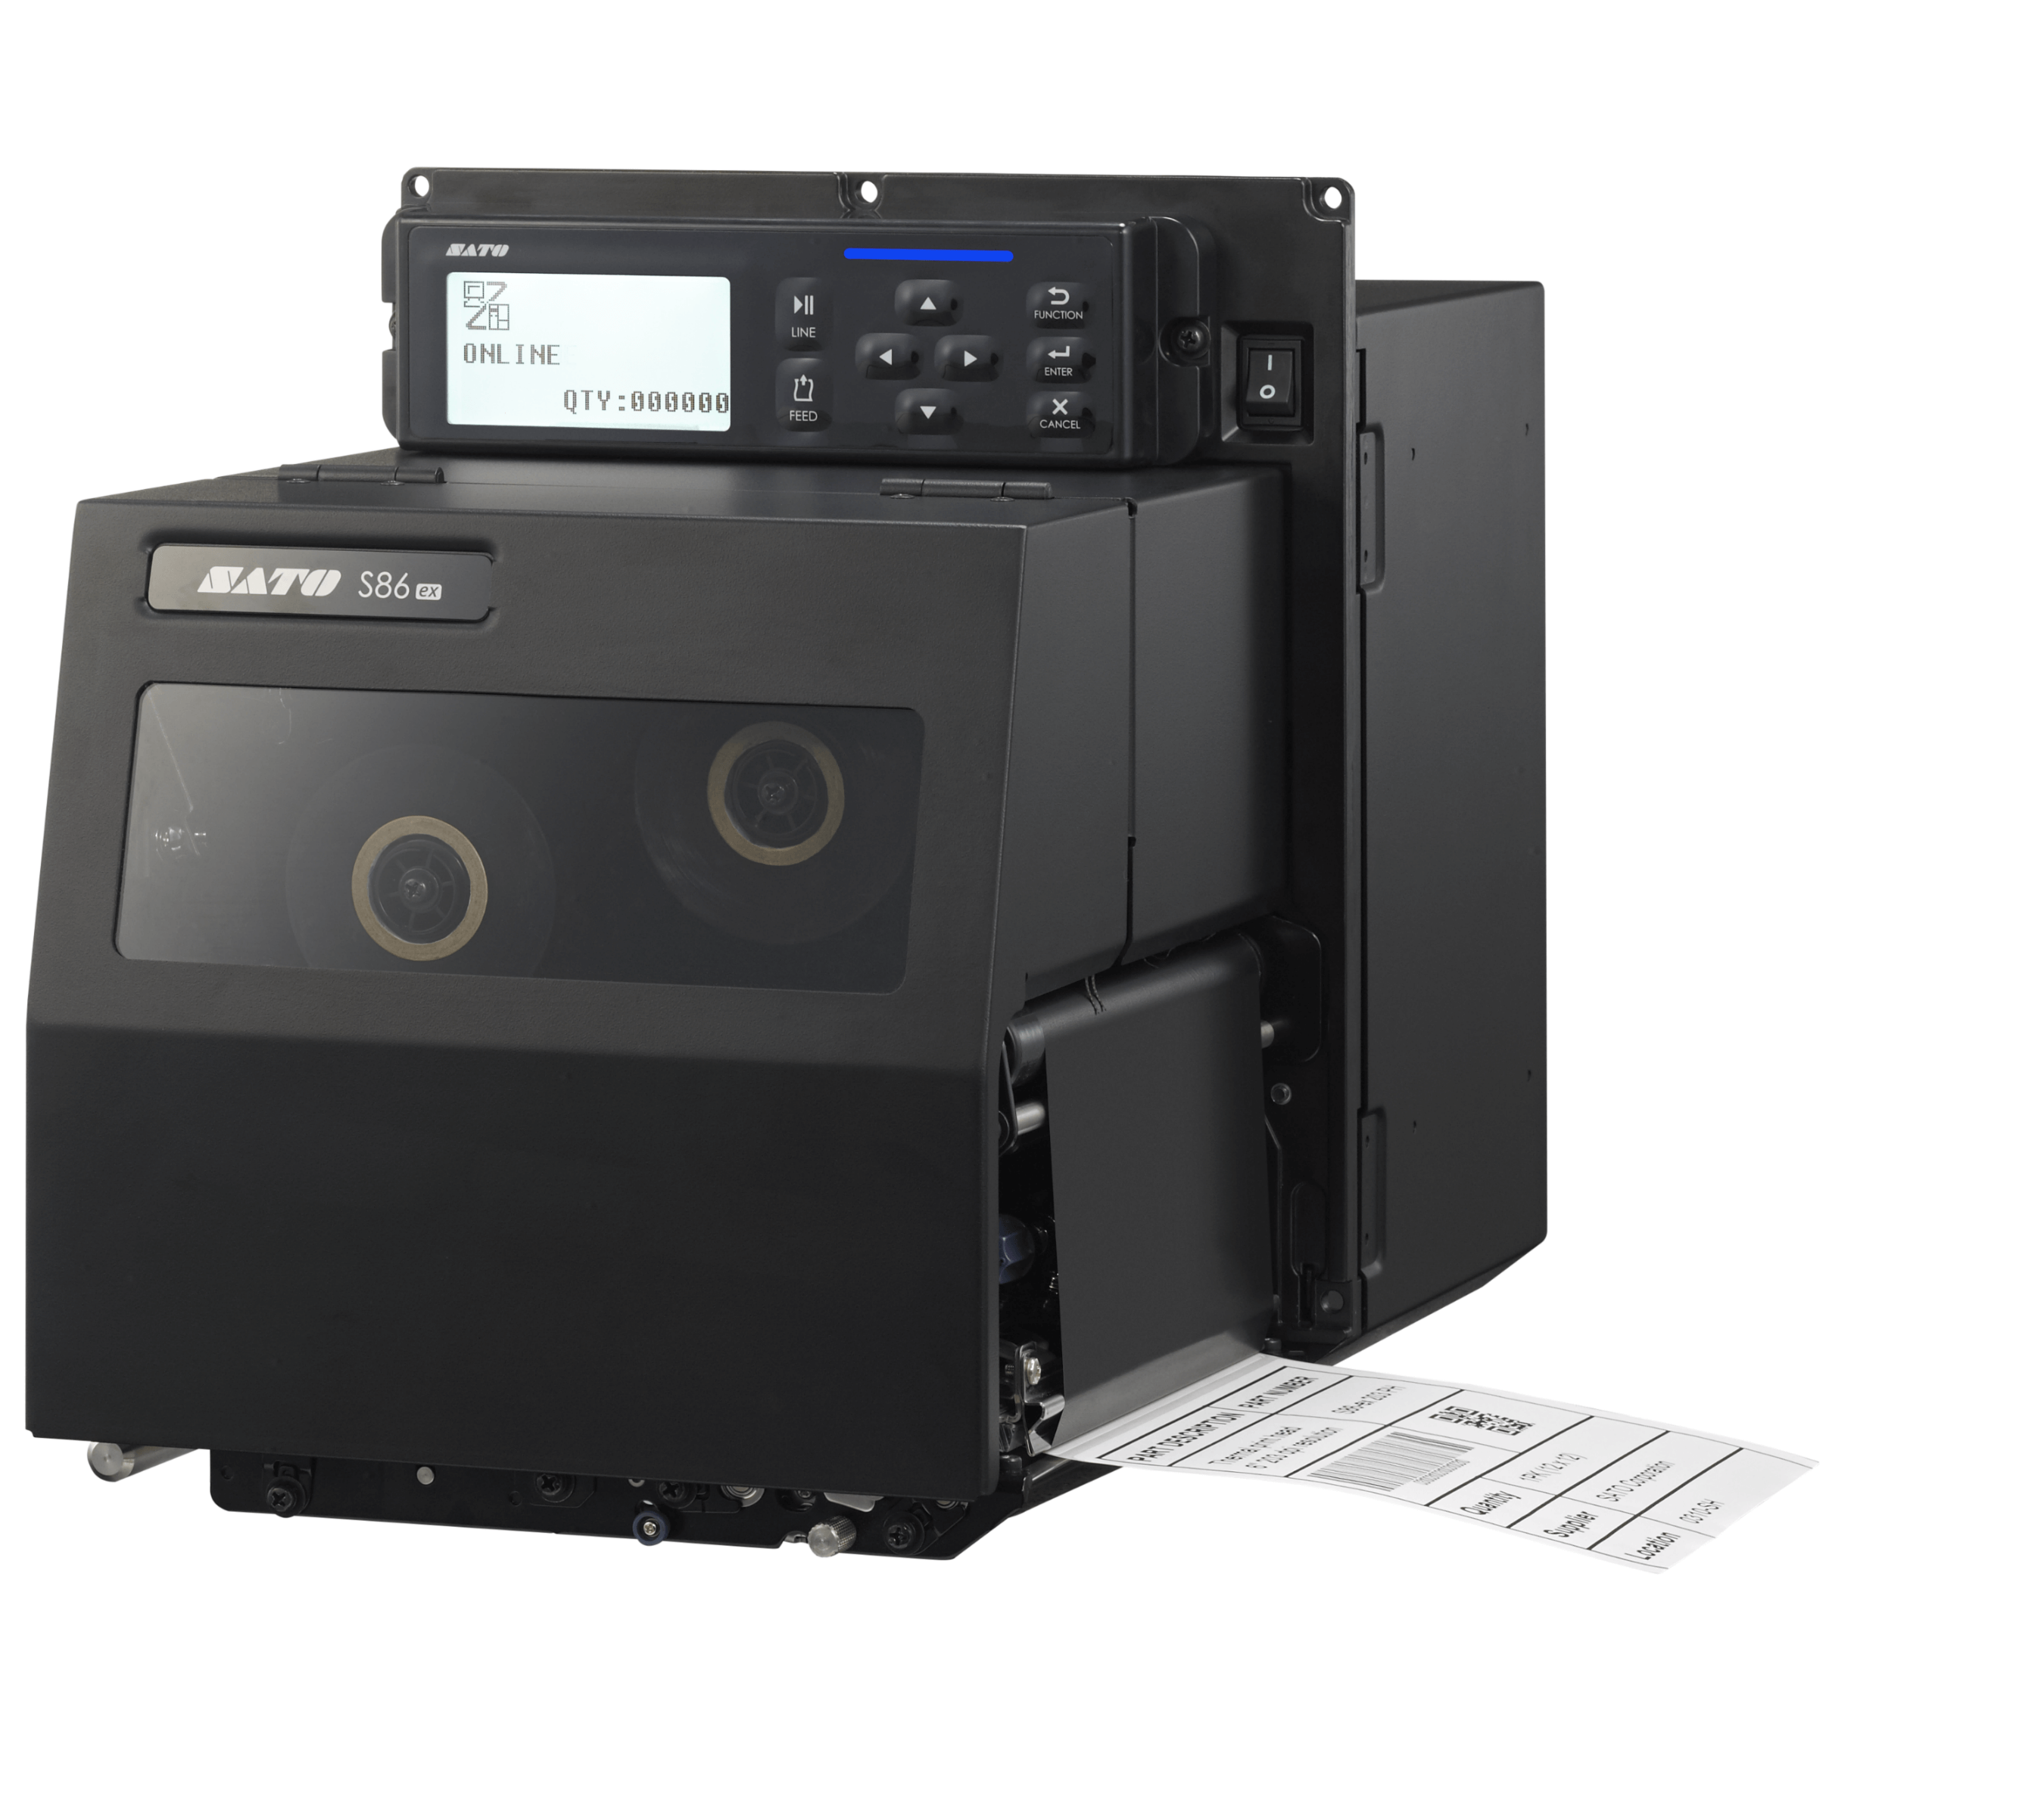 Impresora de etiquetas Sato S86-ex Series